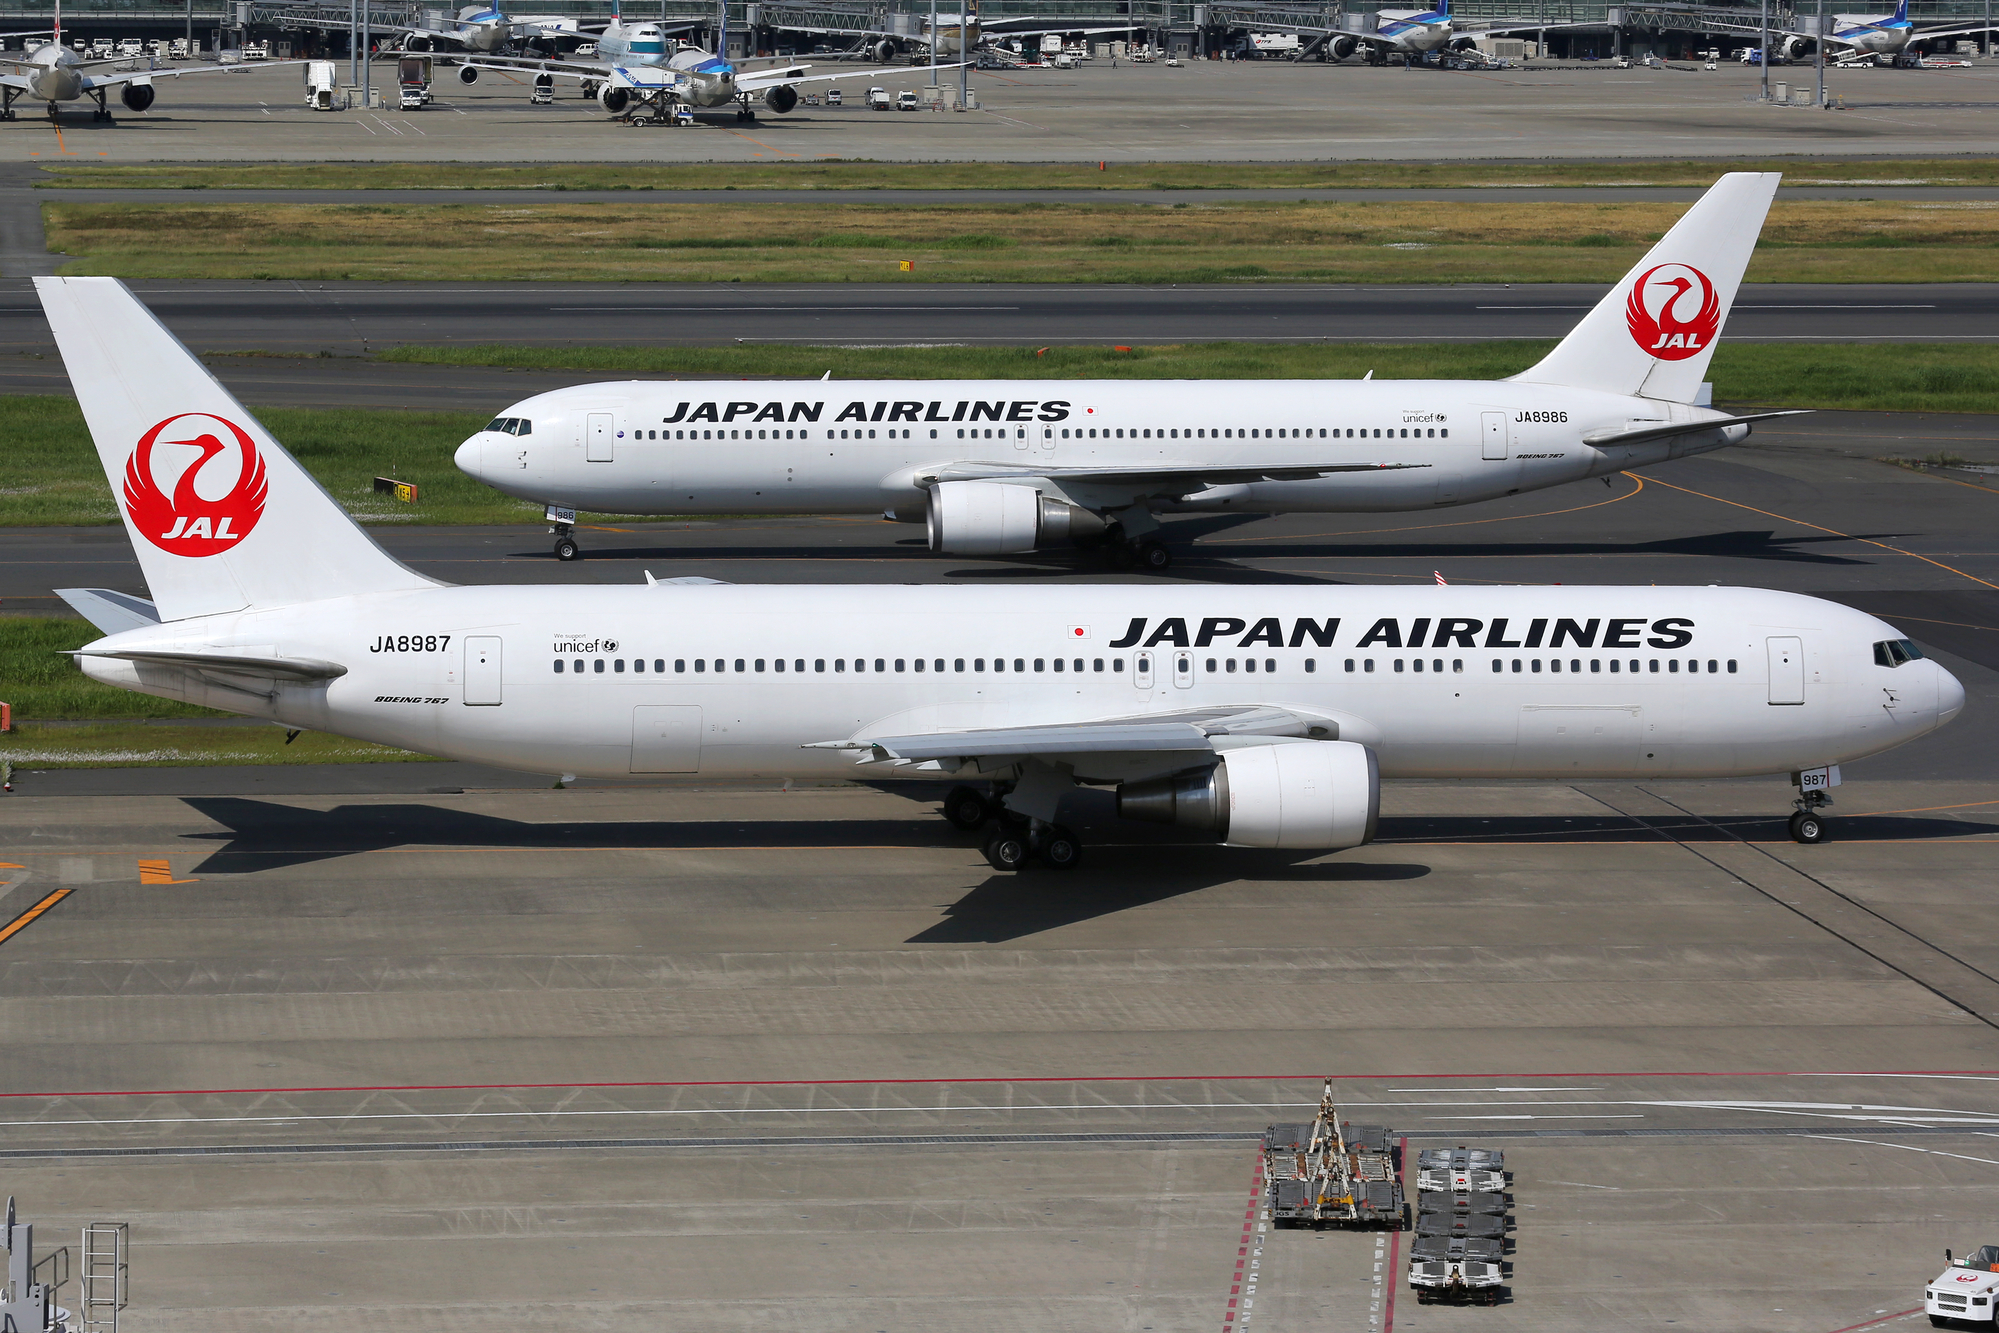 Пьяного пилота Japan Airlines сняли с рейса за час до вылета  - фото 1